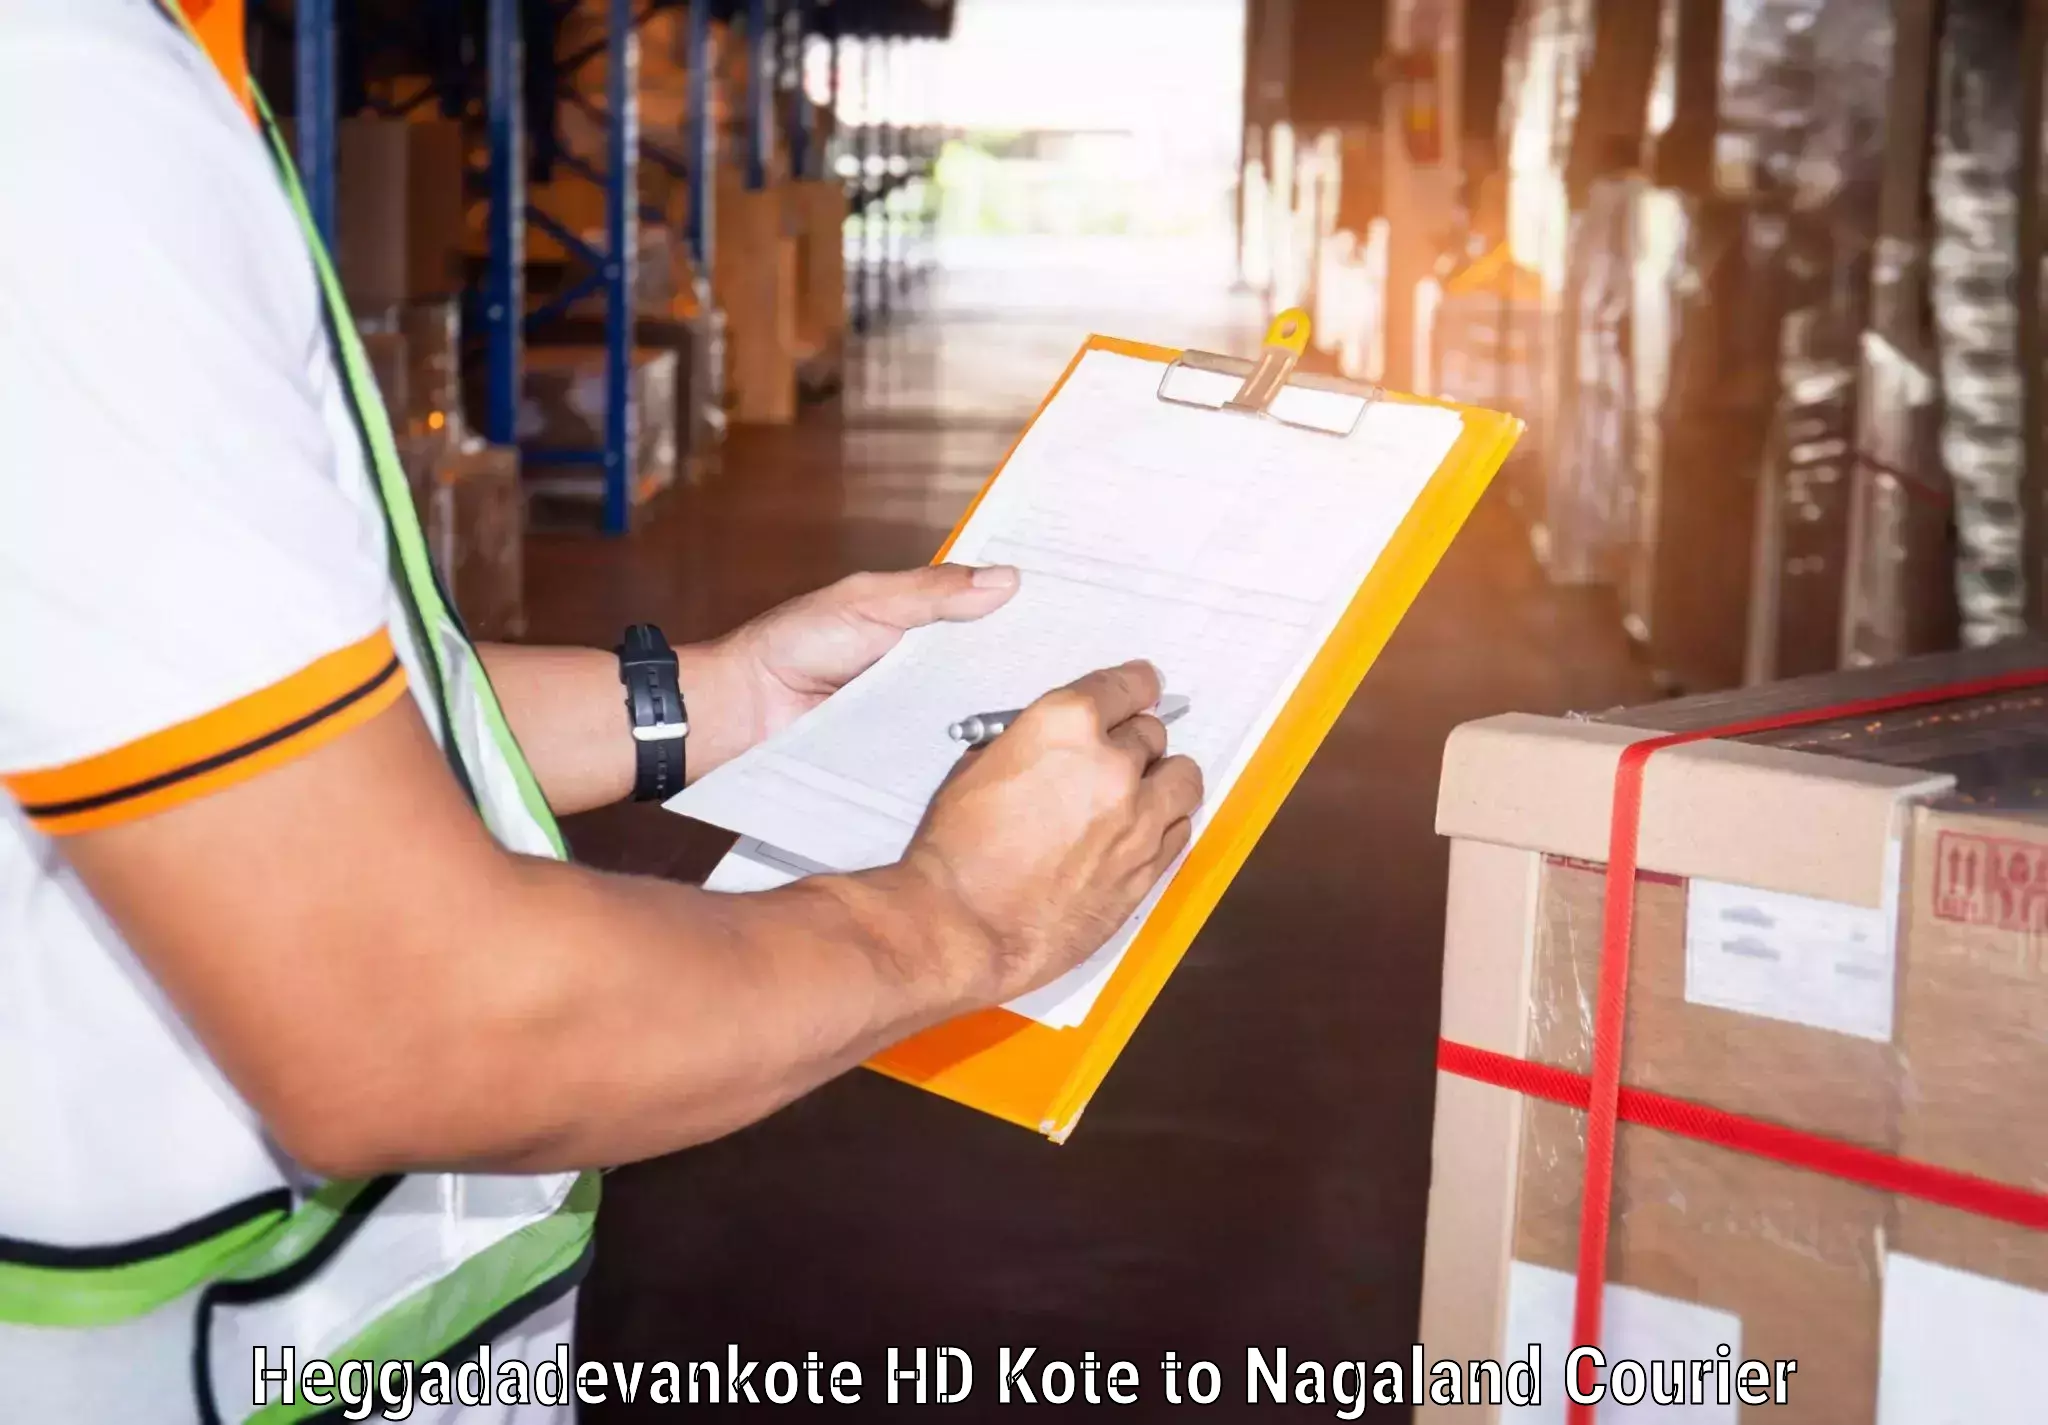 Global freight services Heggadadevankote HD Kote to Peren